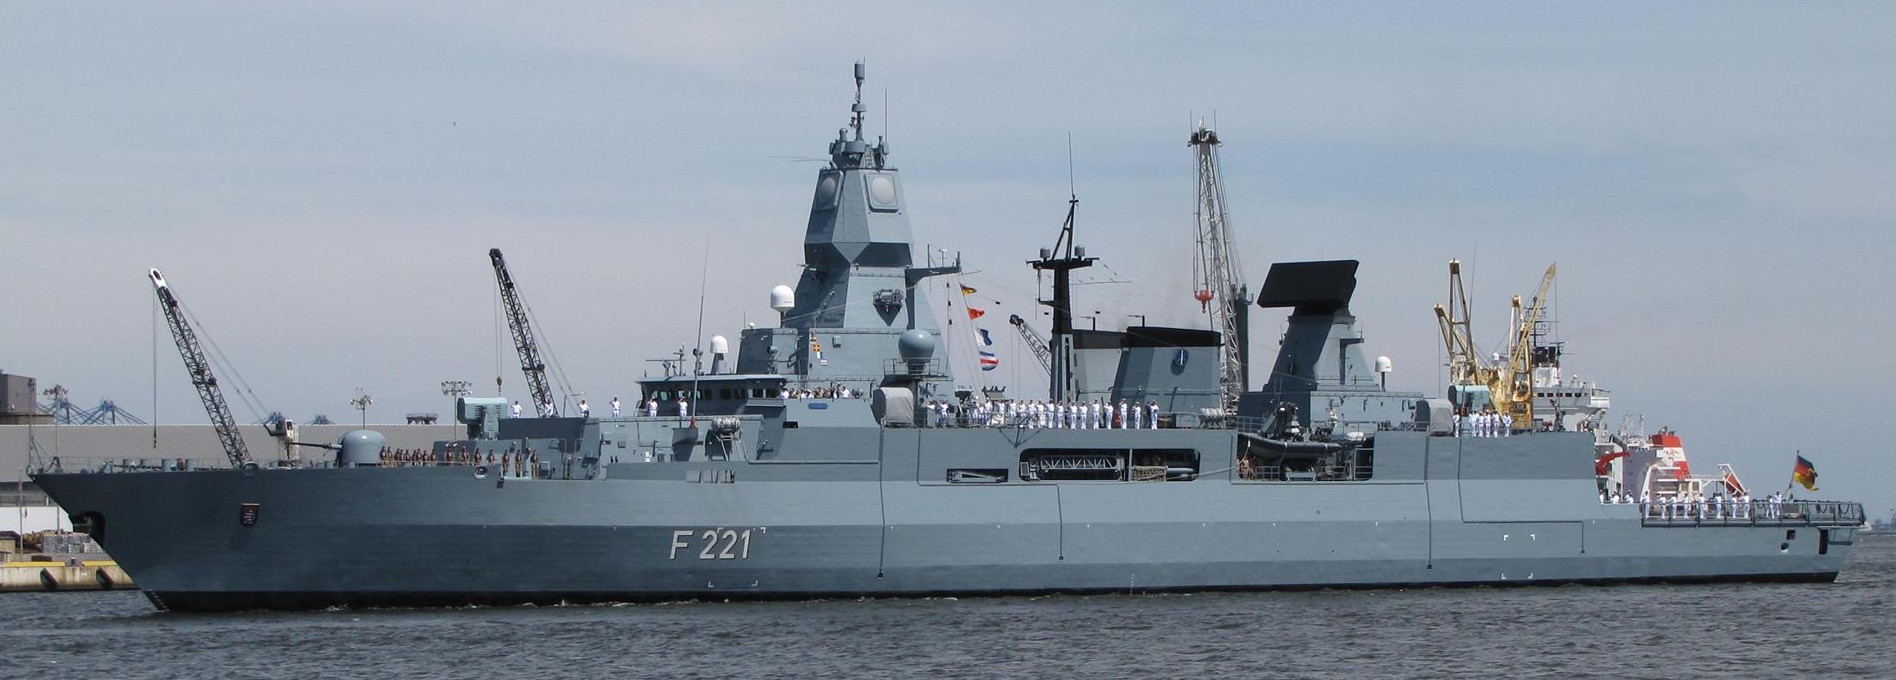 f-221 fgs hessen type 124 sachsen class guided missile frigate german navy deutsche marine fregatte 46